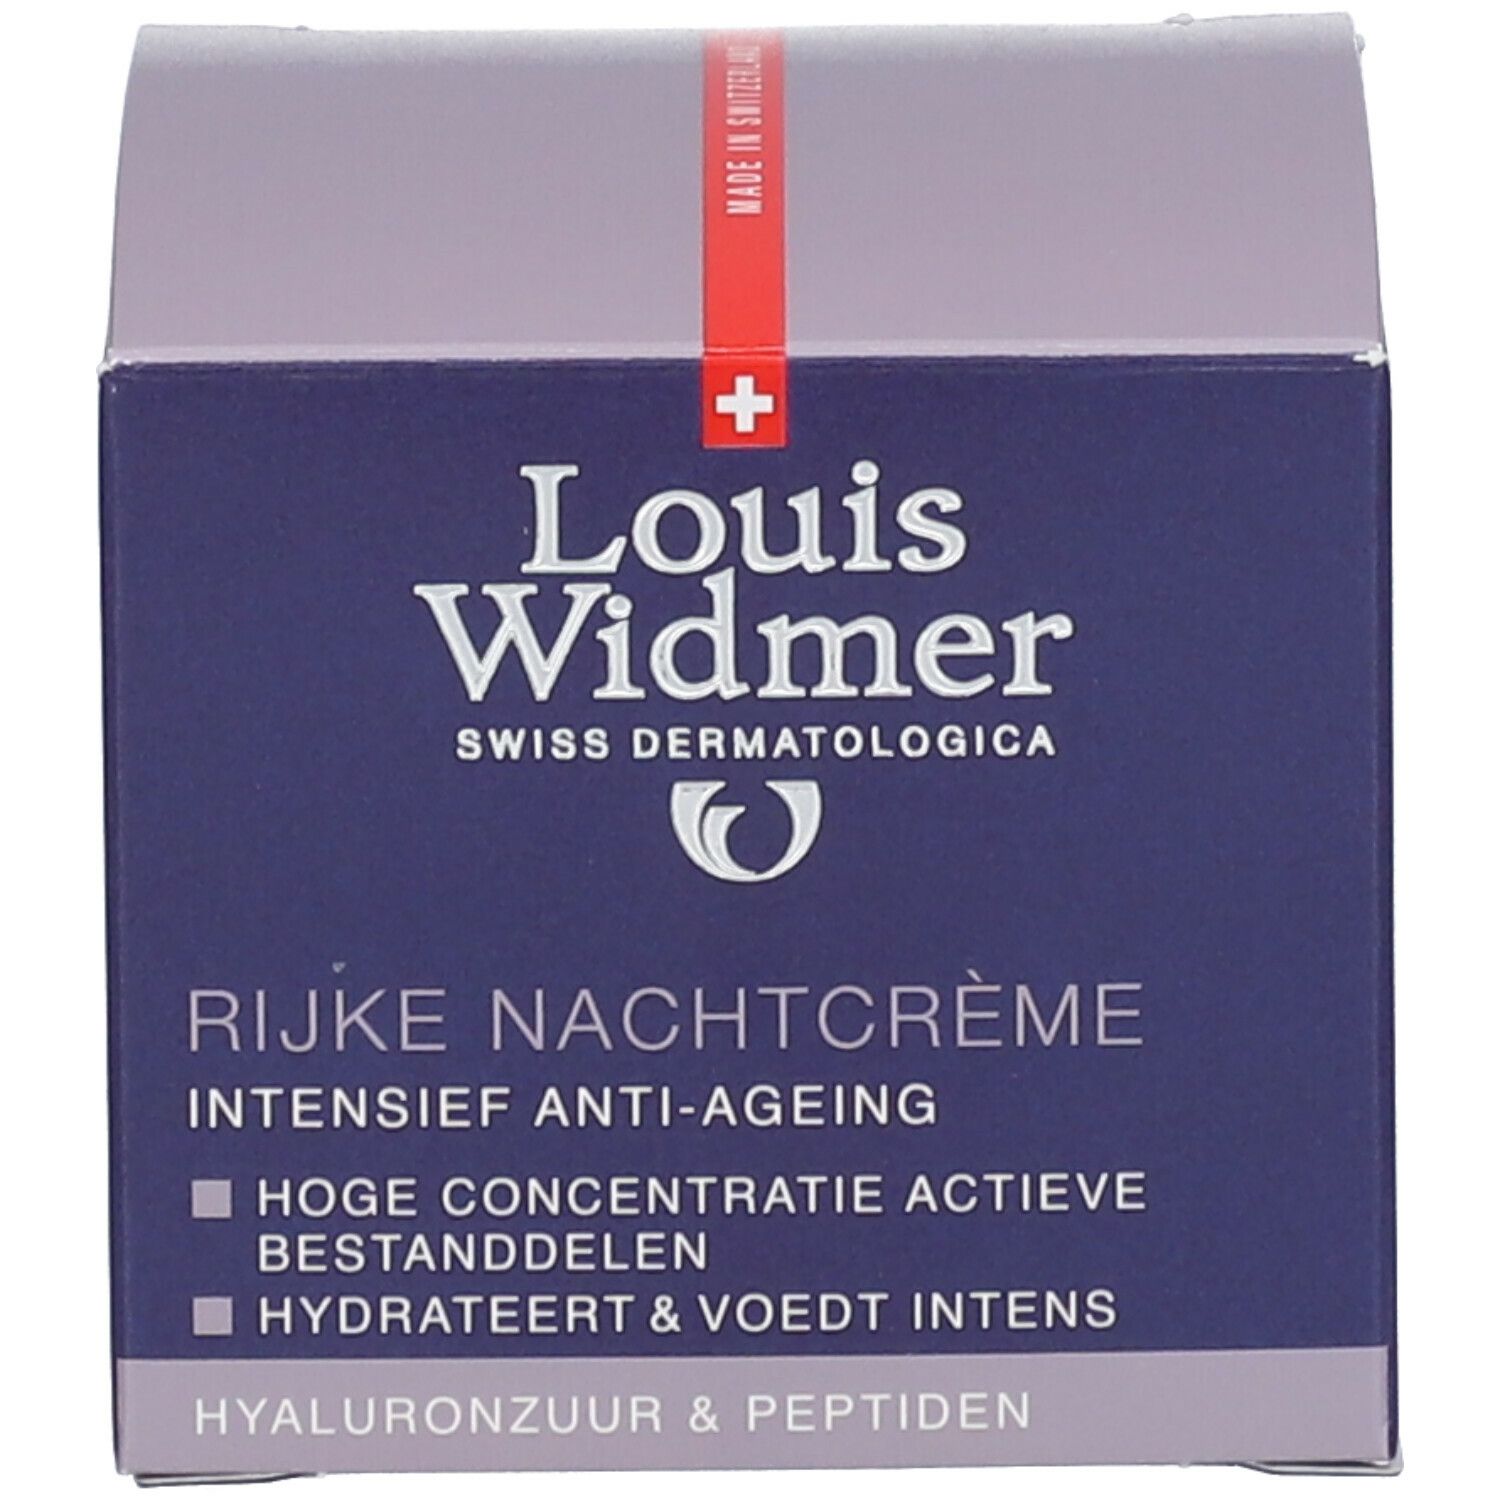 Louis Widmer Rich Night Cream